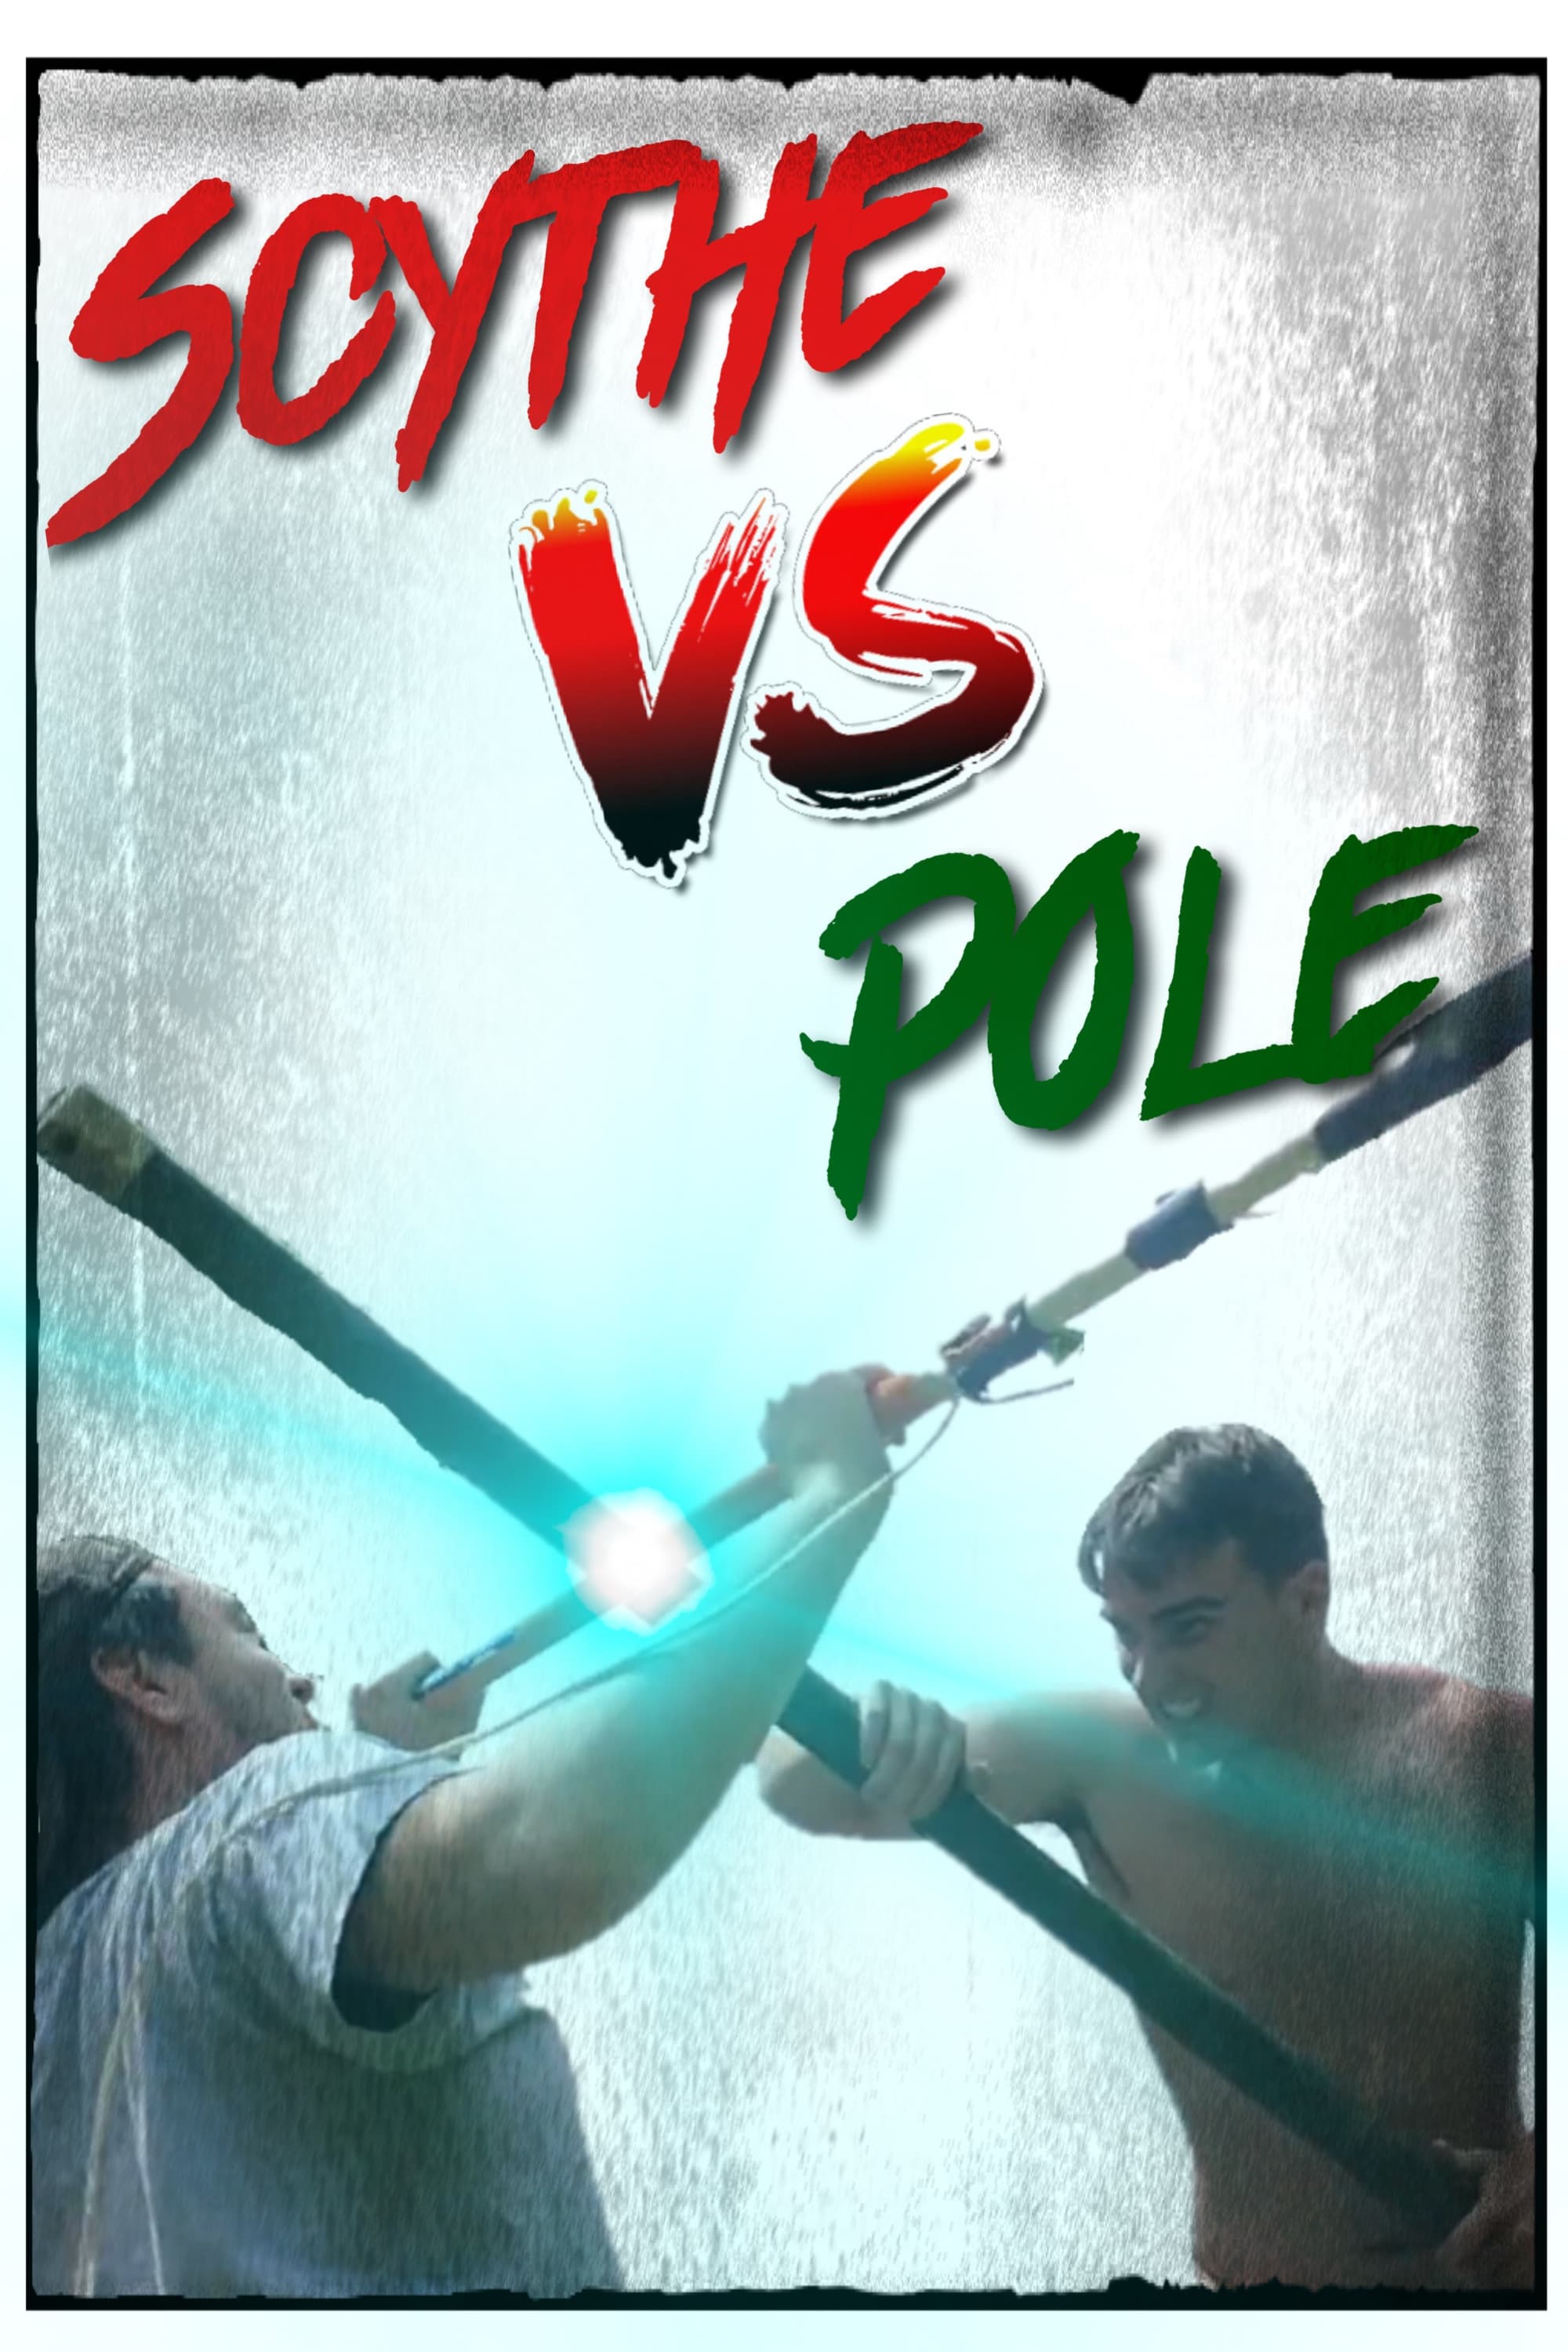 Scythe vs Pole